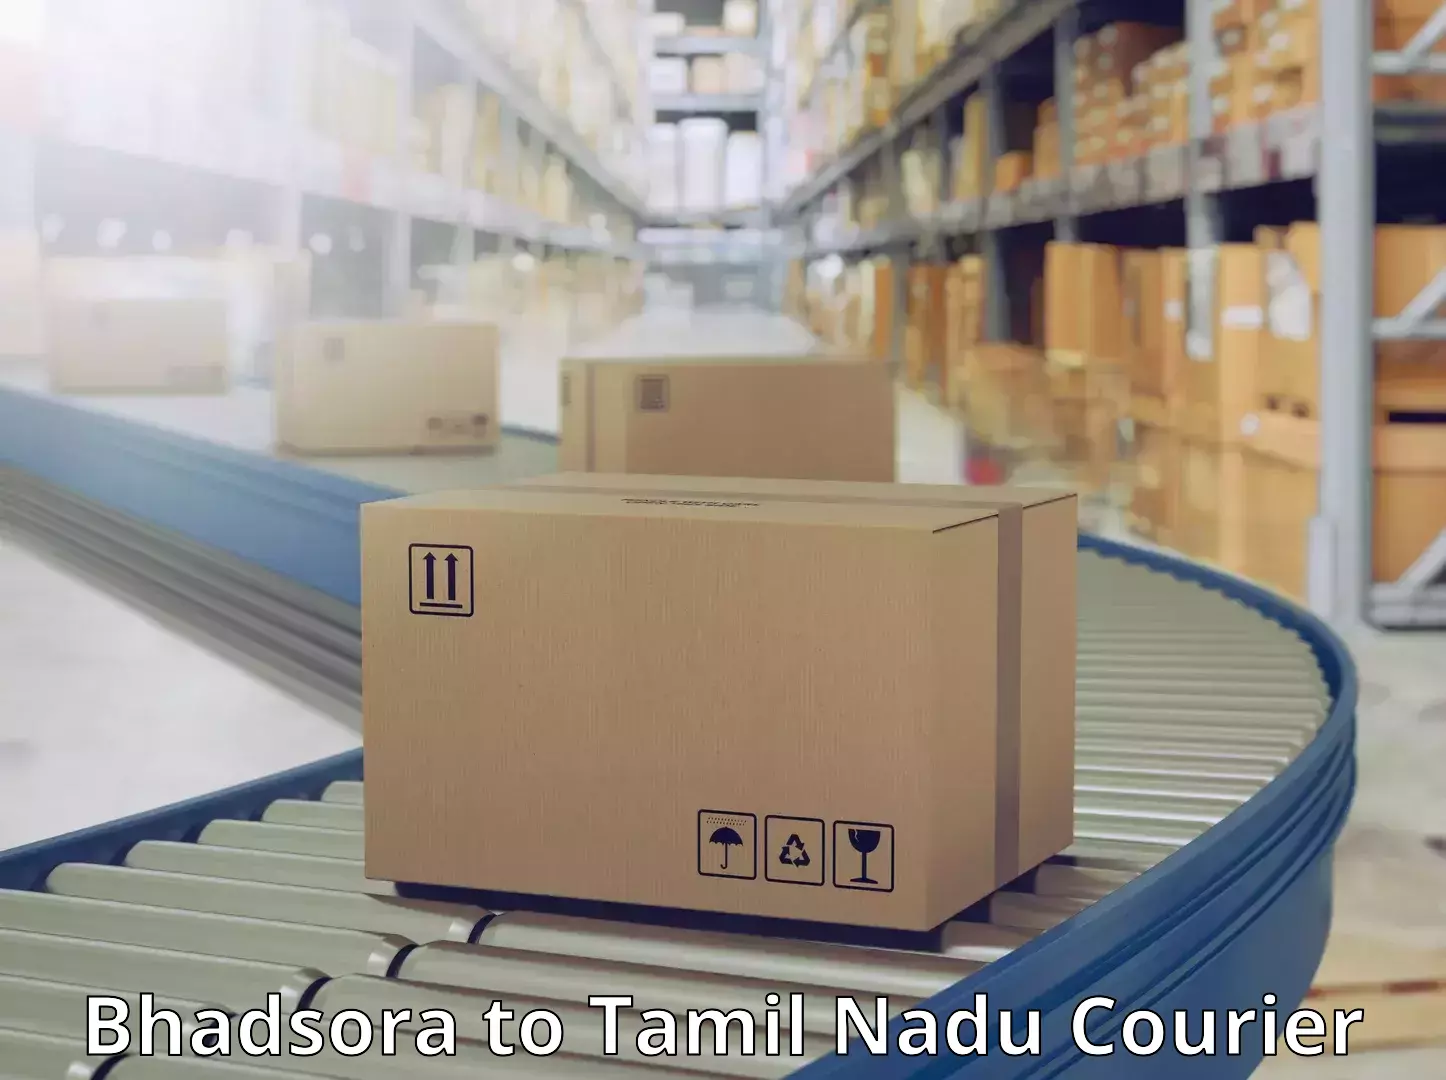 Global shipping solutions Bhadsora to Amrita Vishwa Vidyapeetham Coimbatore